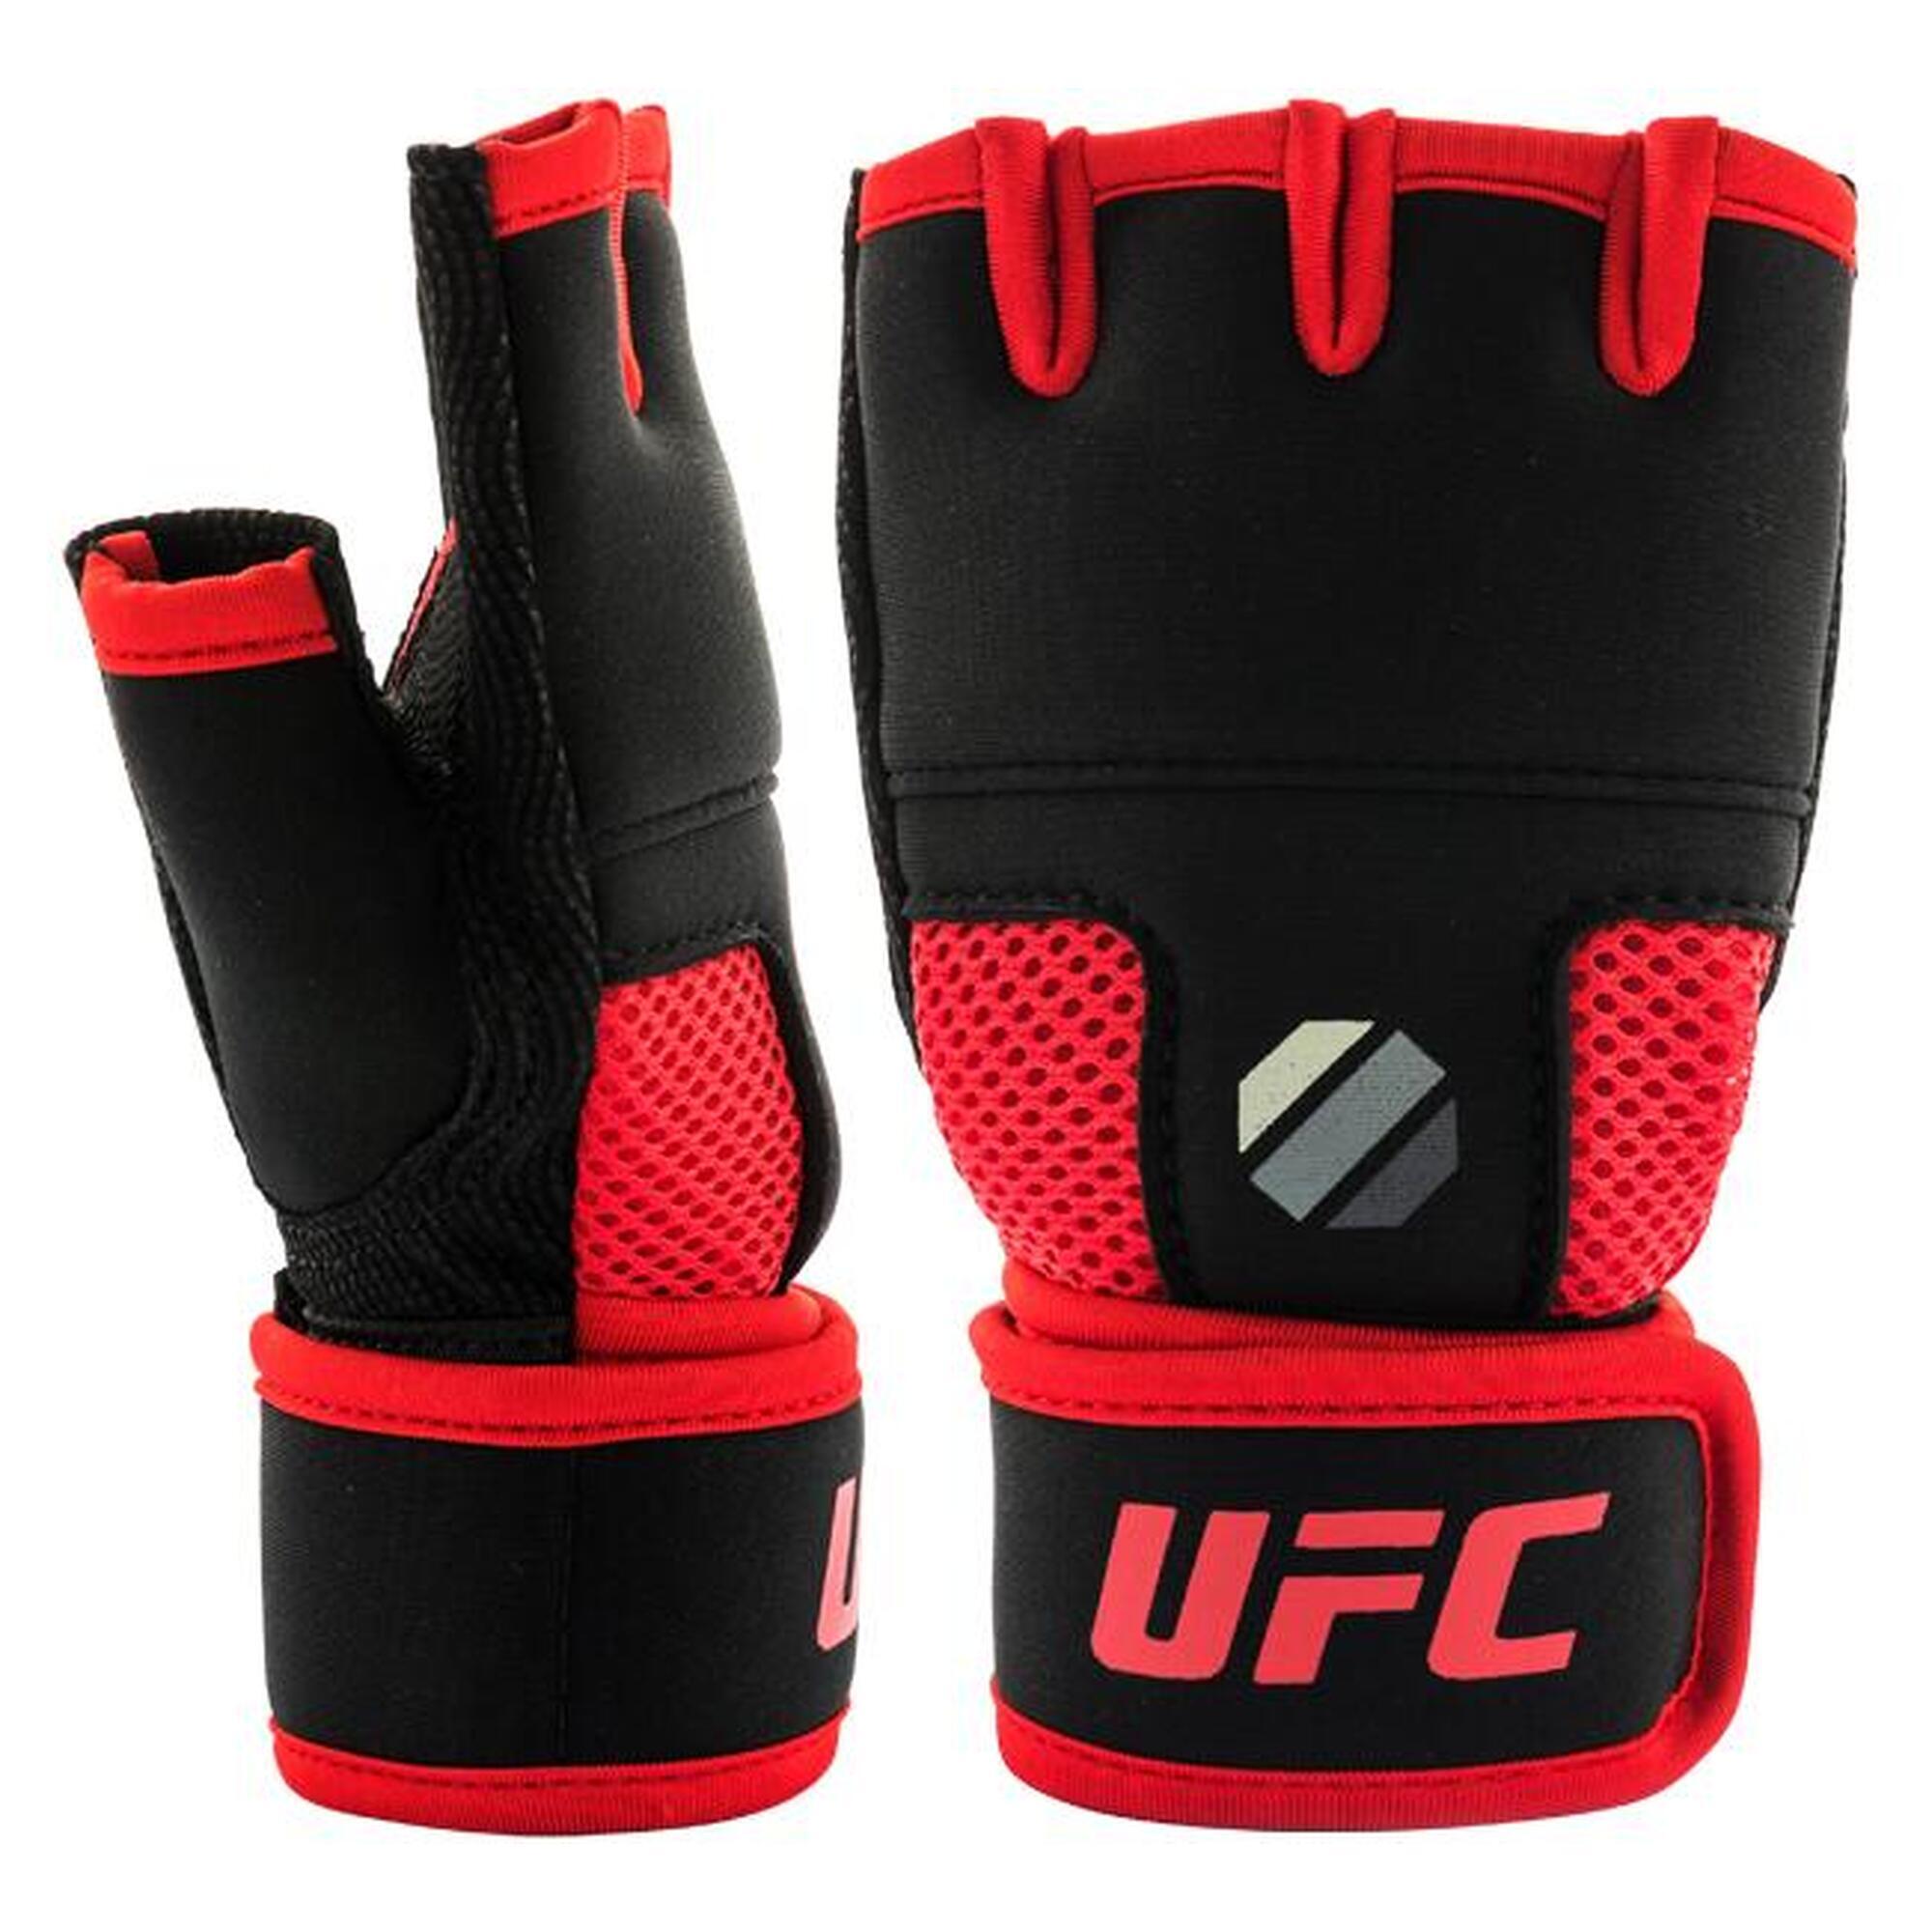 Manopla bajo guante de gel - UFC - Negro y rojo - Talla S/M